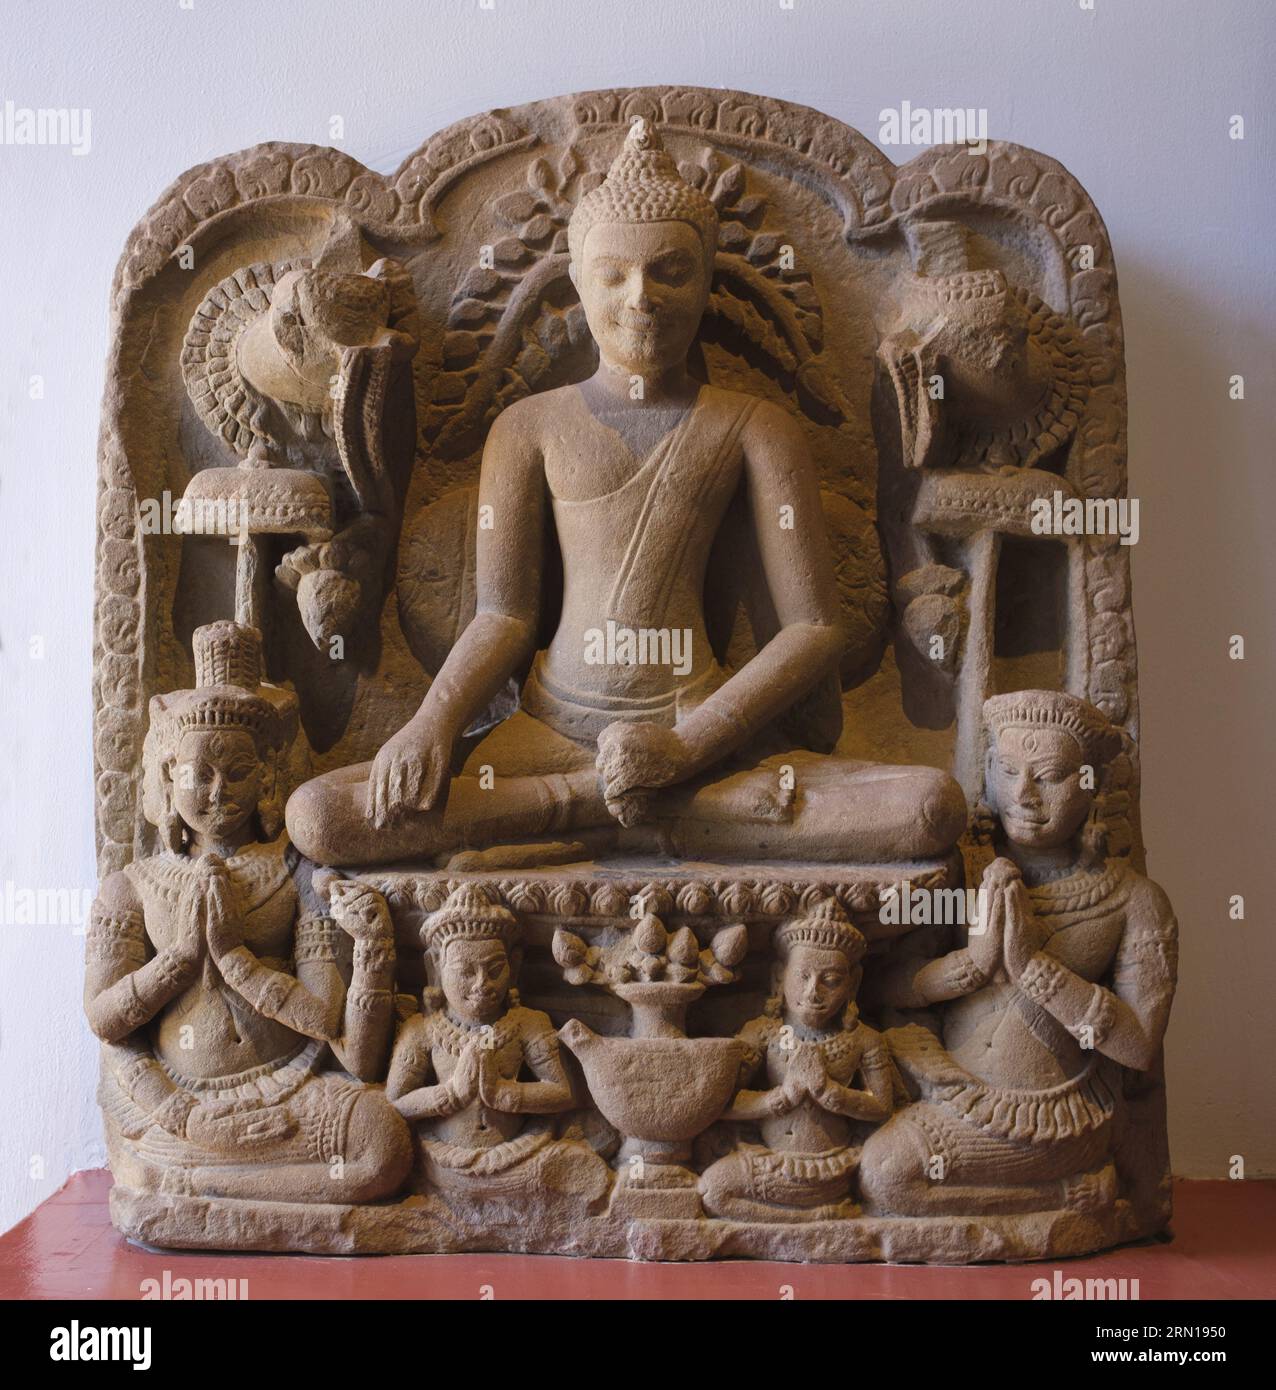 Camboya: Un bajorrelieve de piedra arenisca del siglo XIII del Buda y los adoradores, originario del Bayon, Angkor Thom, ahora en el Museo Nacional de Camboya, Phnom Penh. El Museo Nacional, ubicado en un pabellón rojo construido en 1918, alberga una colección de arte jemer que incluye algunas de las mejores piezas existentes. Las exposiciones incluyen una estatua de Vishnu del siglo VI, una estatua de Shiva del siglo IX y la famosa cabeza esculpida de Jayavarman VII en pose meditativa. Particularmente impresionante es un busto dañado de un Vishnu reclinado que una vez fue parte de una estatua de bronce masiva encontrada en el oeste de Mebon. Foto de stock